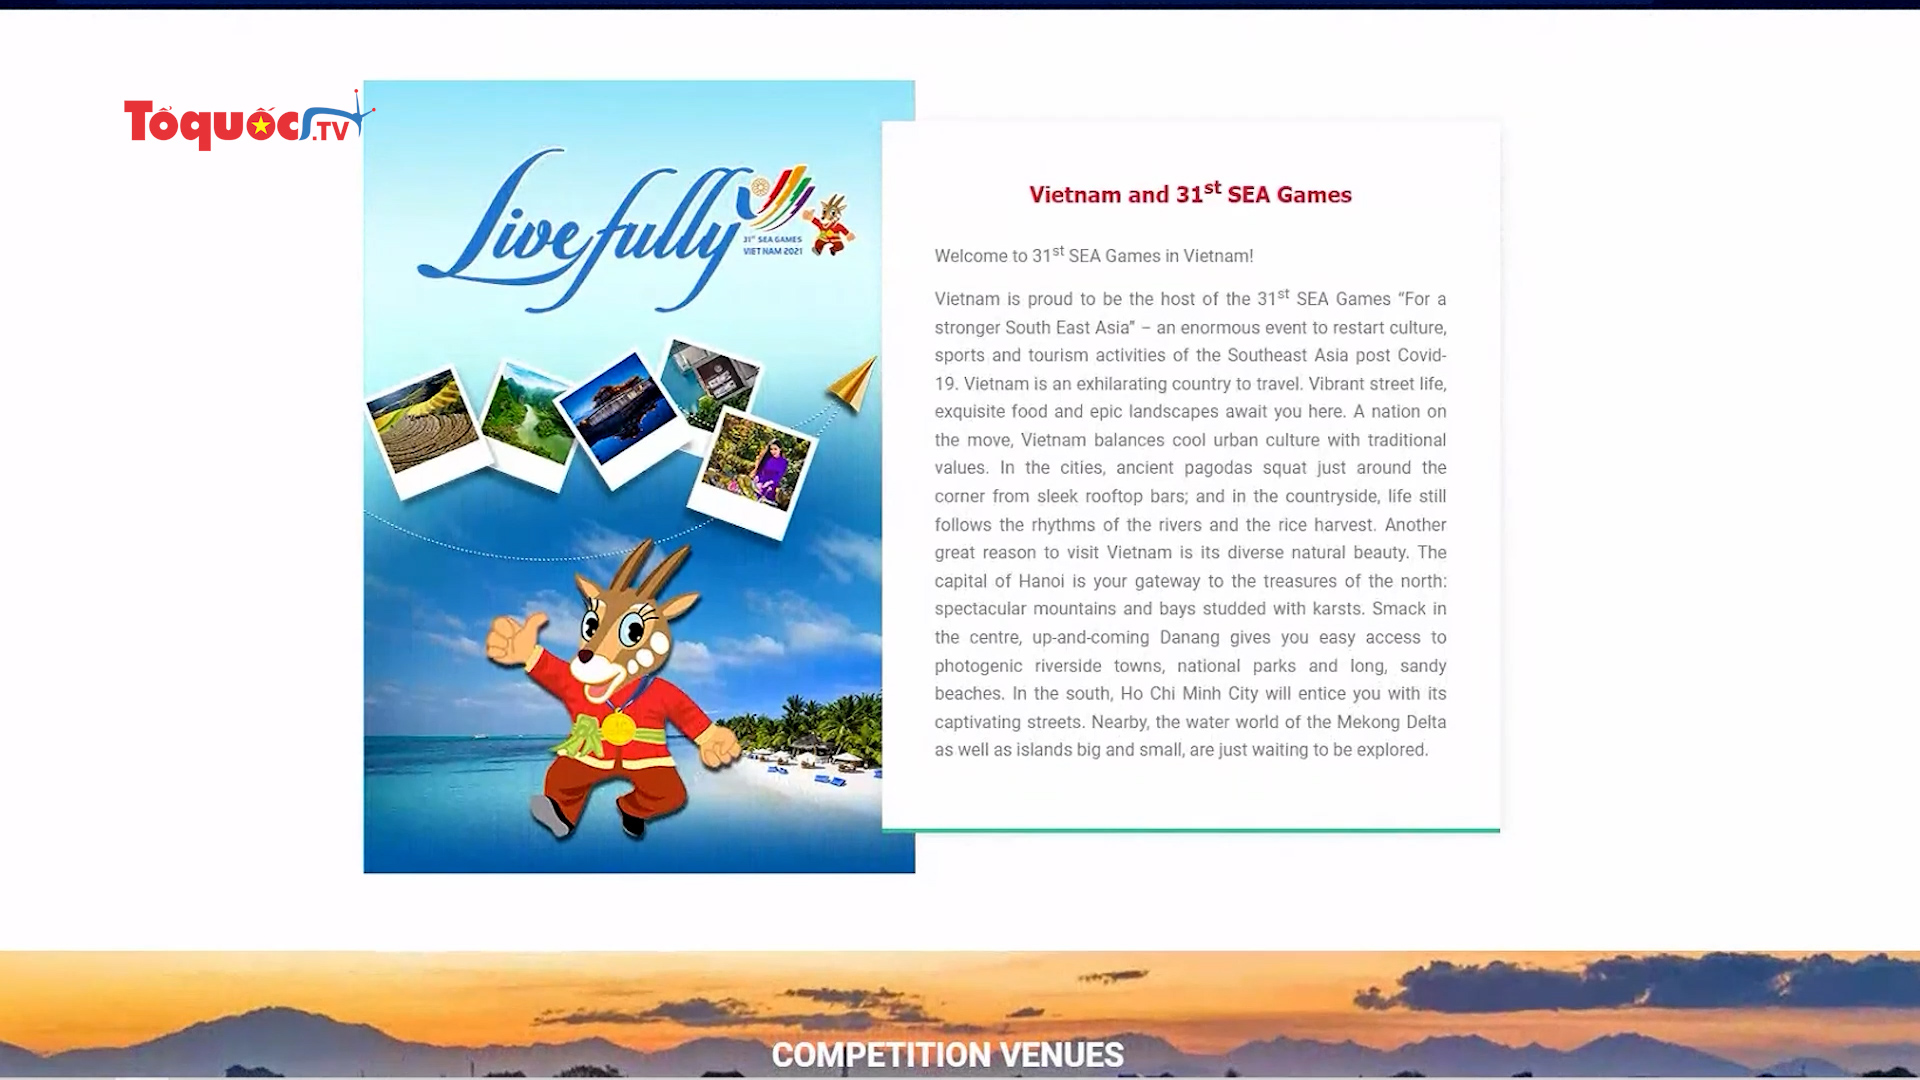 Ra mắt chuyên trang quảng bá du lịch nhân dịp SEA Games 31